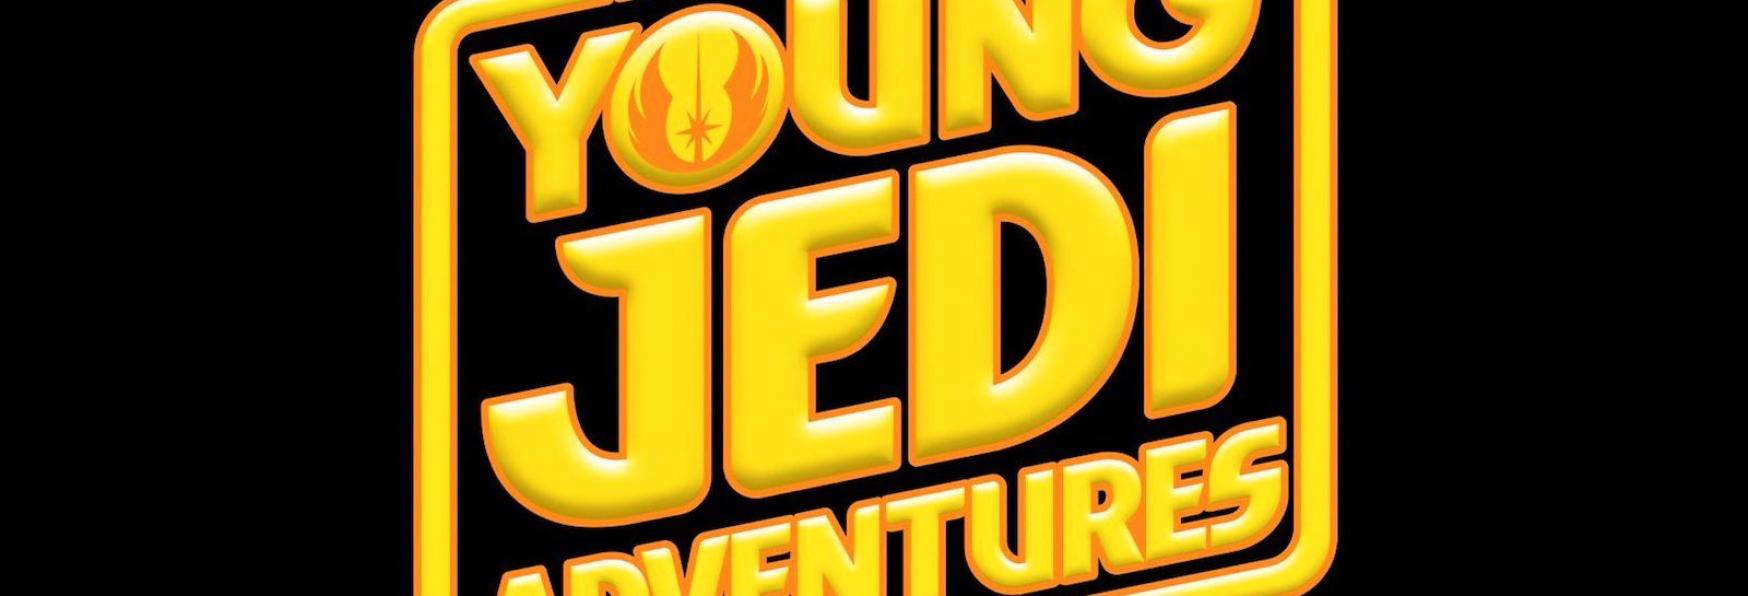 Star Wars: Young Jedi Adventures - Annunciata la nuova Serie Animata targata Disney+